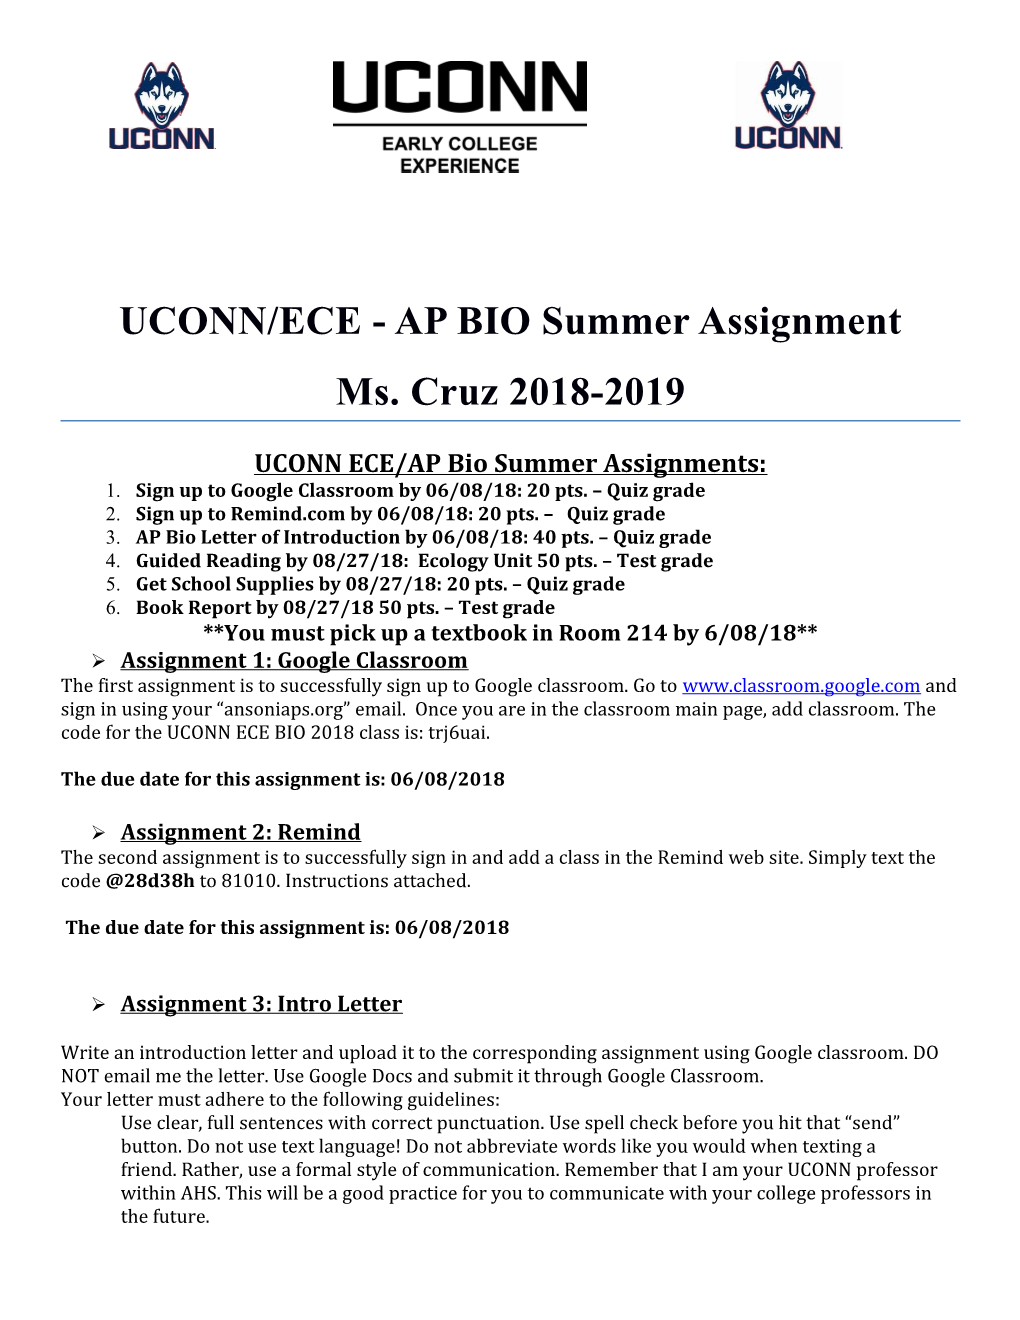 UCONN ECE/AP Bio Summer Assignments